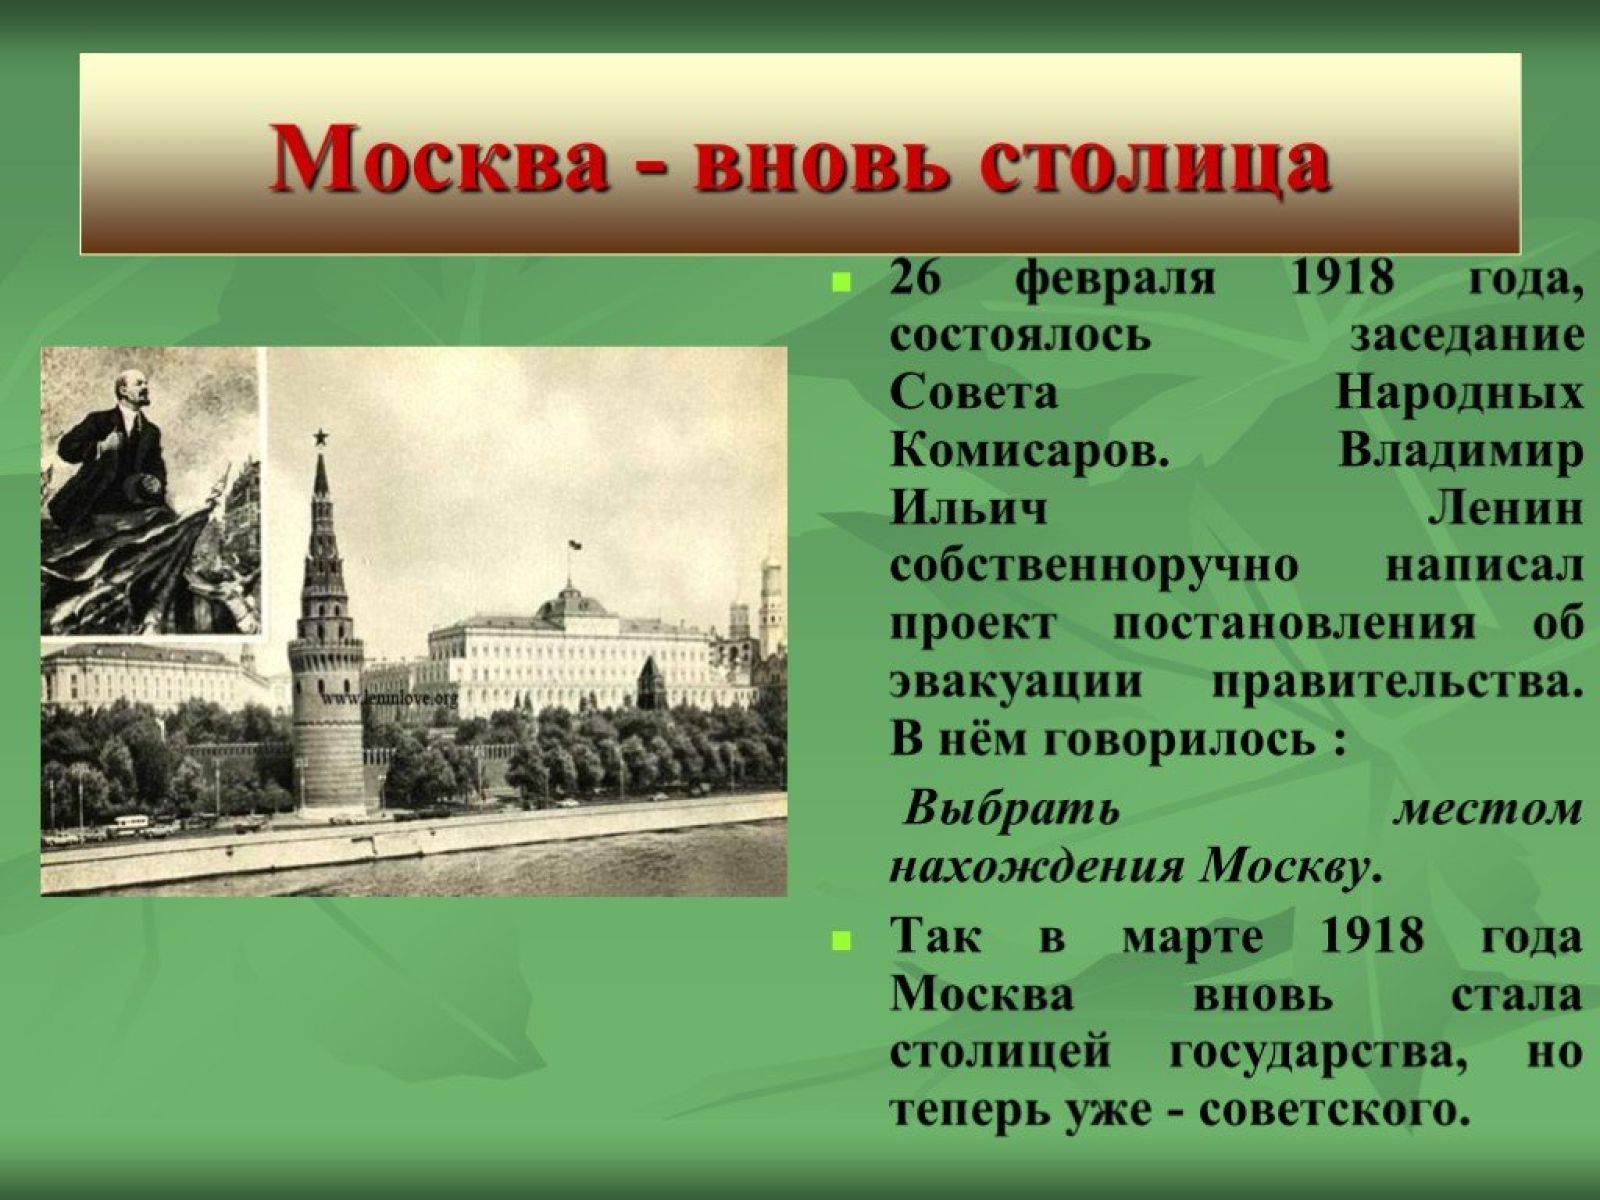 В какой город было эвакуировано правительство. Москва 1918 год. Москва стала столицей 1918. Столица была перенесена из Петрограда в Москву.